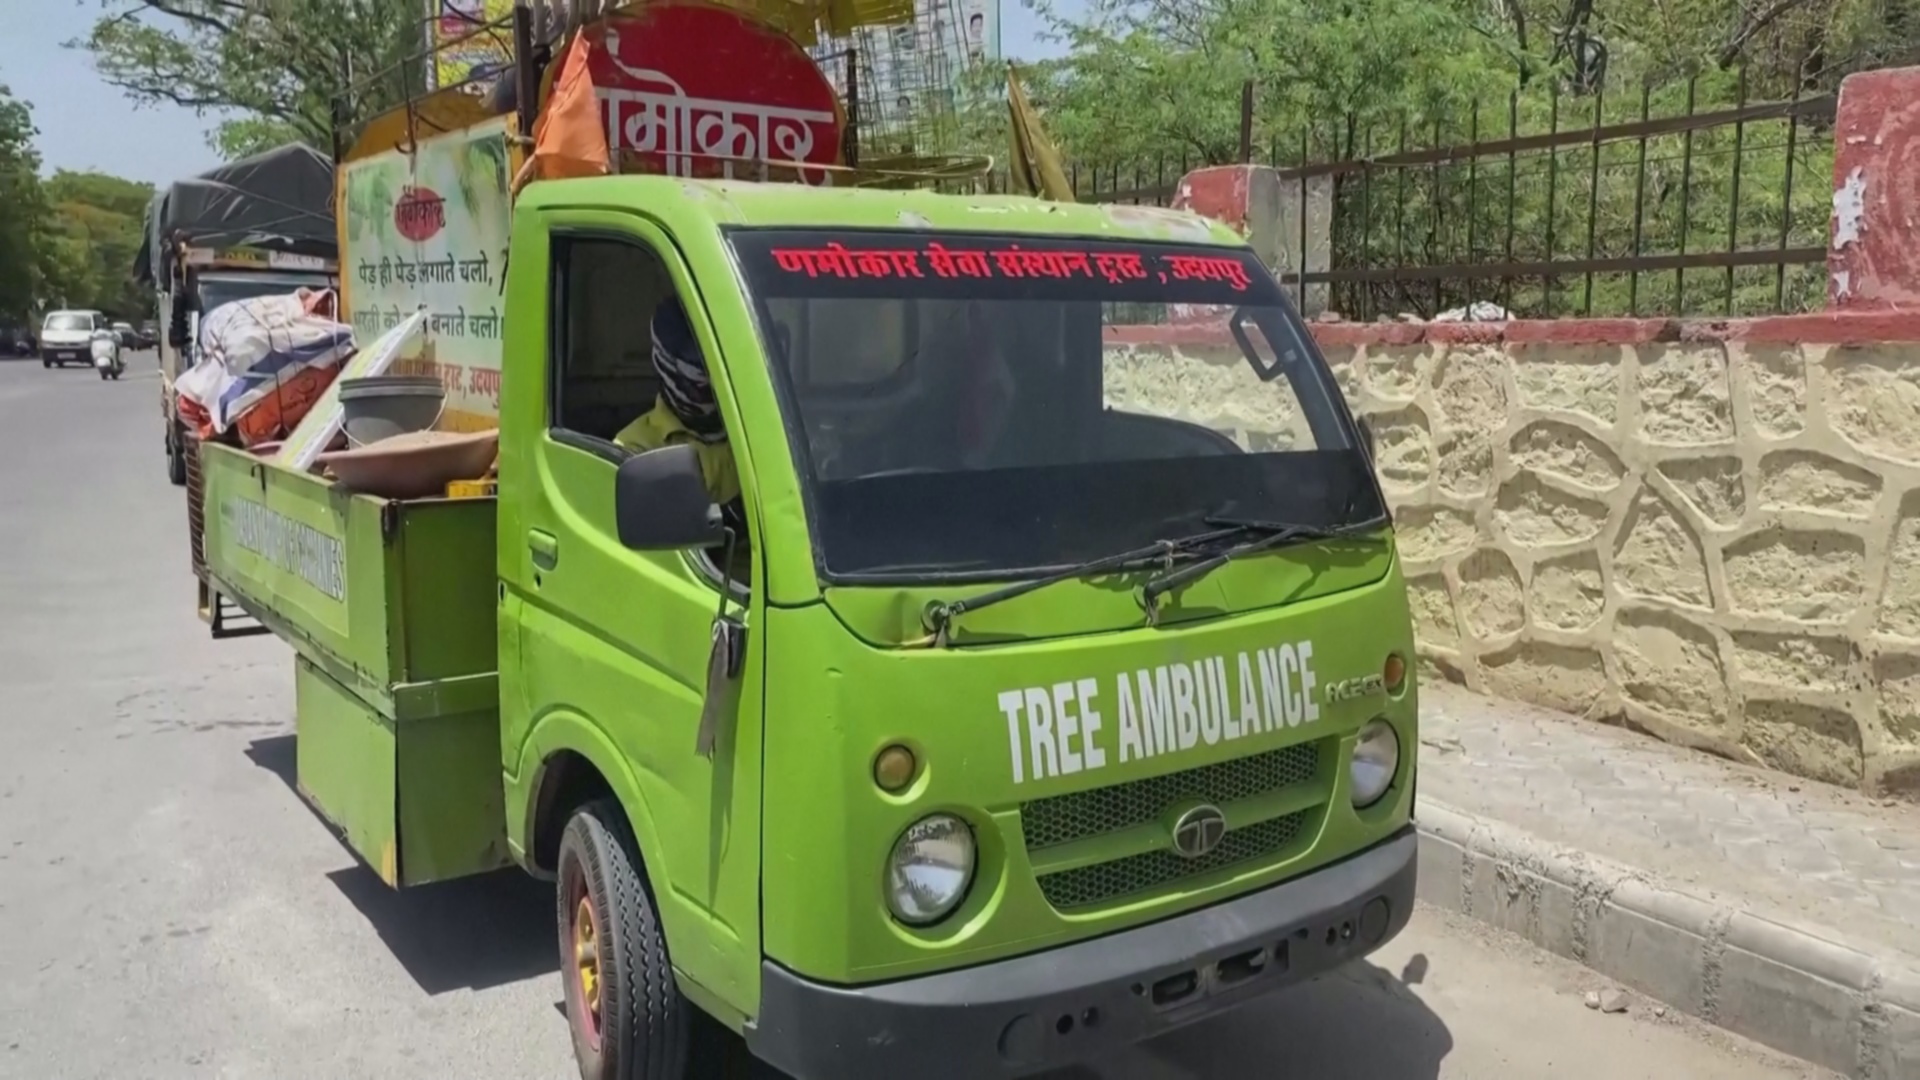 Машина скорой помощи для деревьев ездит по Удайпуру в Индии